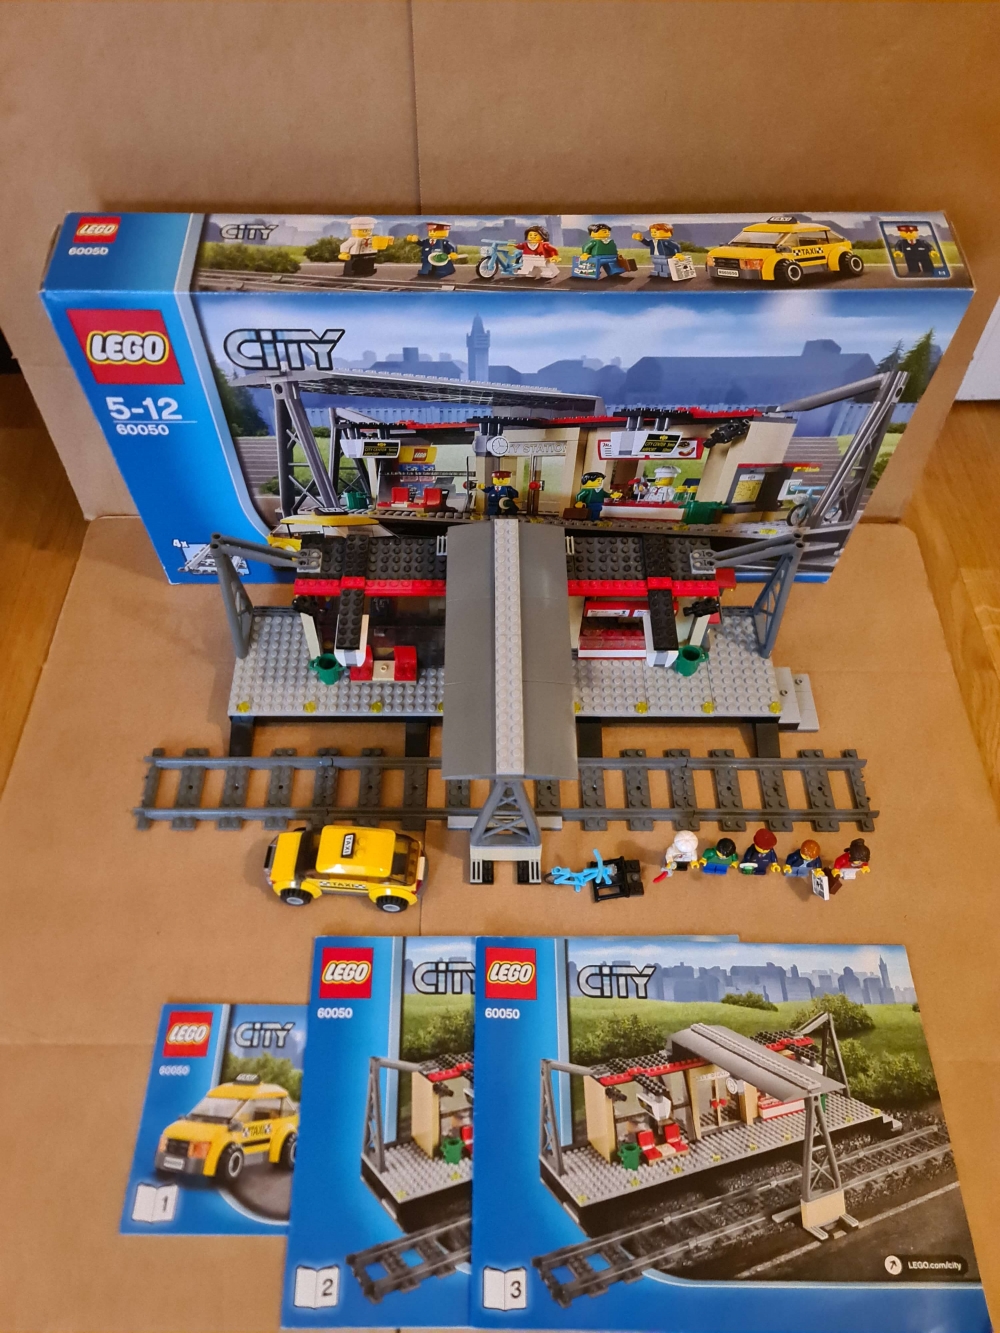 Sett 60050 fra Lego Train : RC serien.

Meget pent. Komplett med manualer og eske.
Alle klistremerker på.